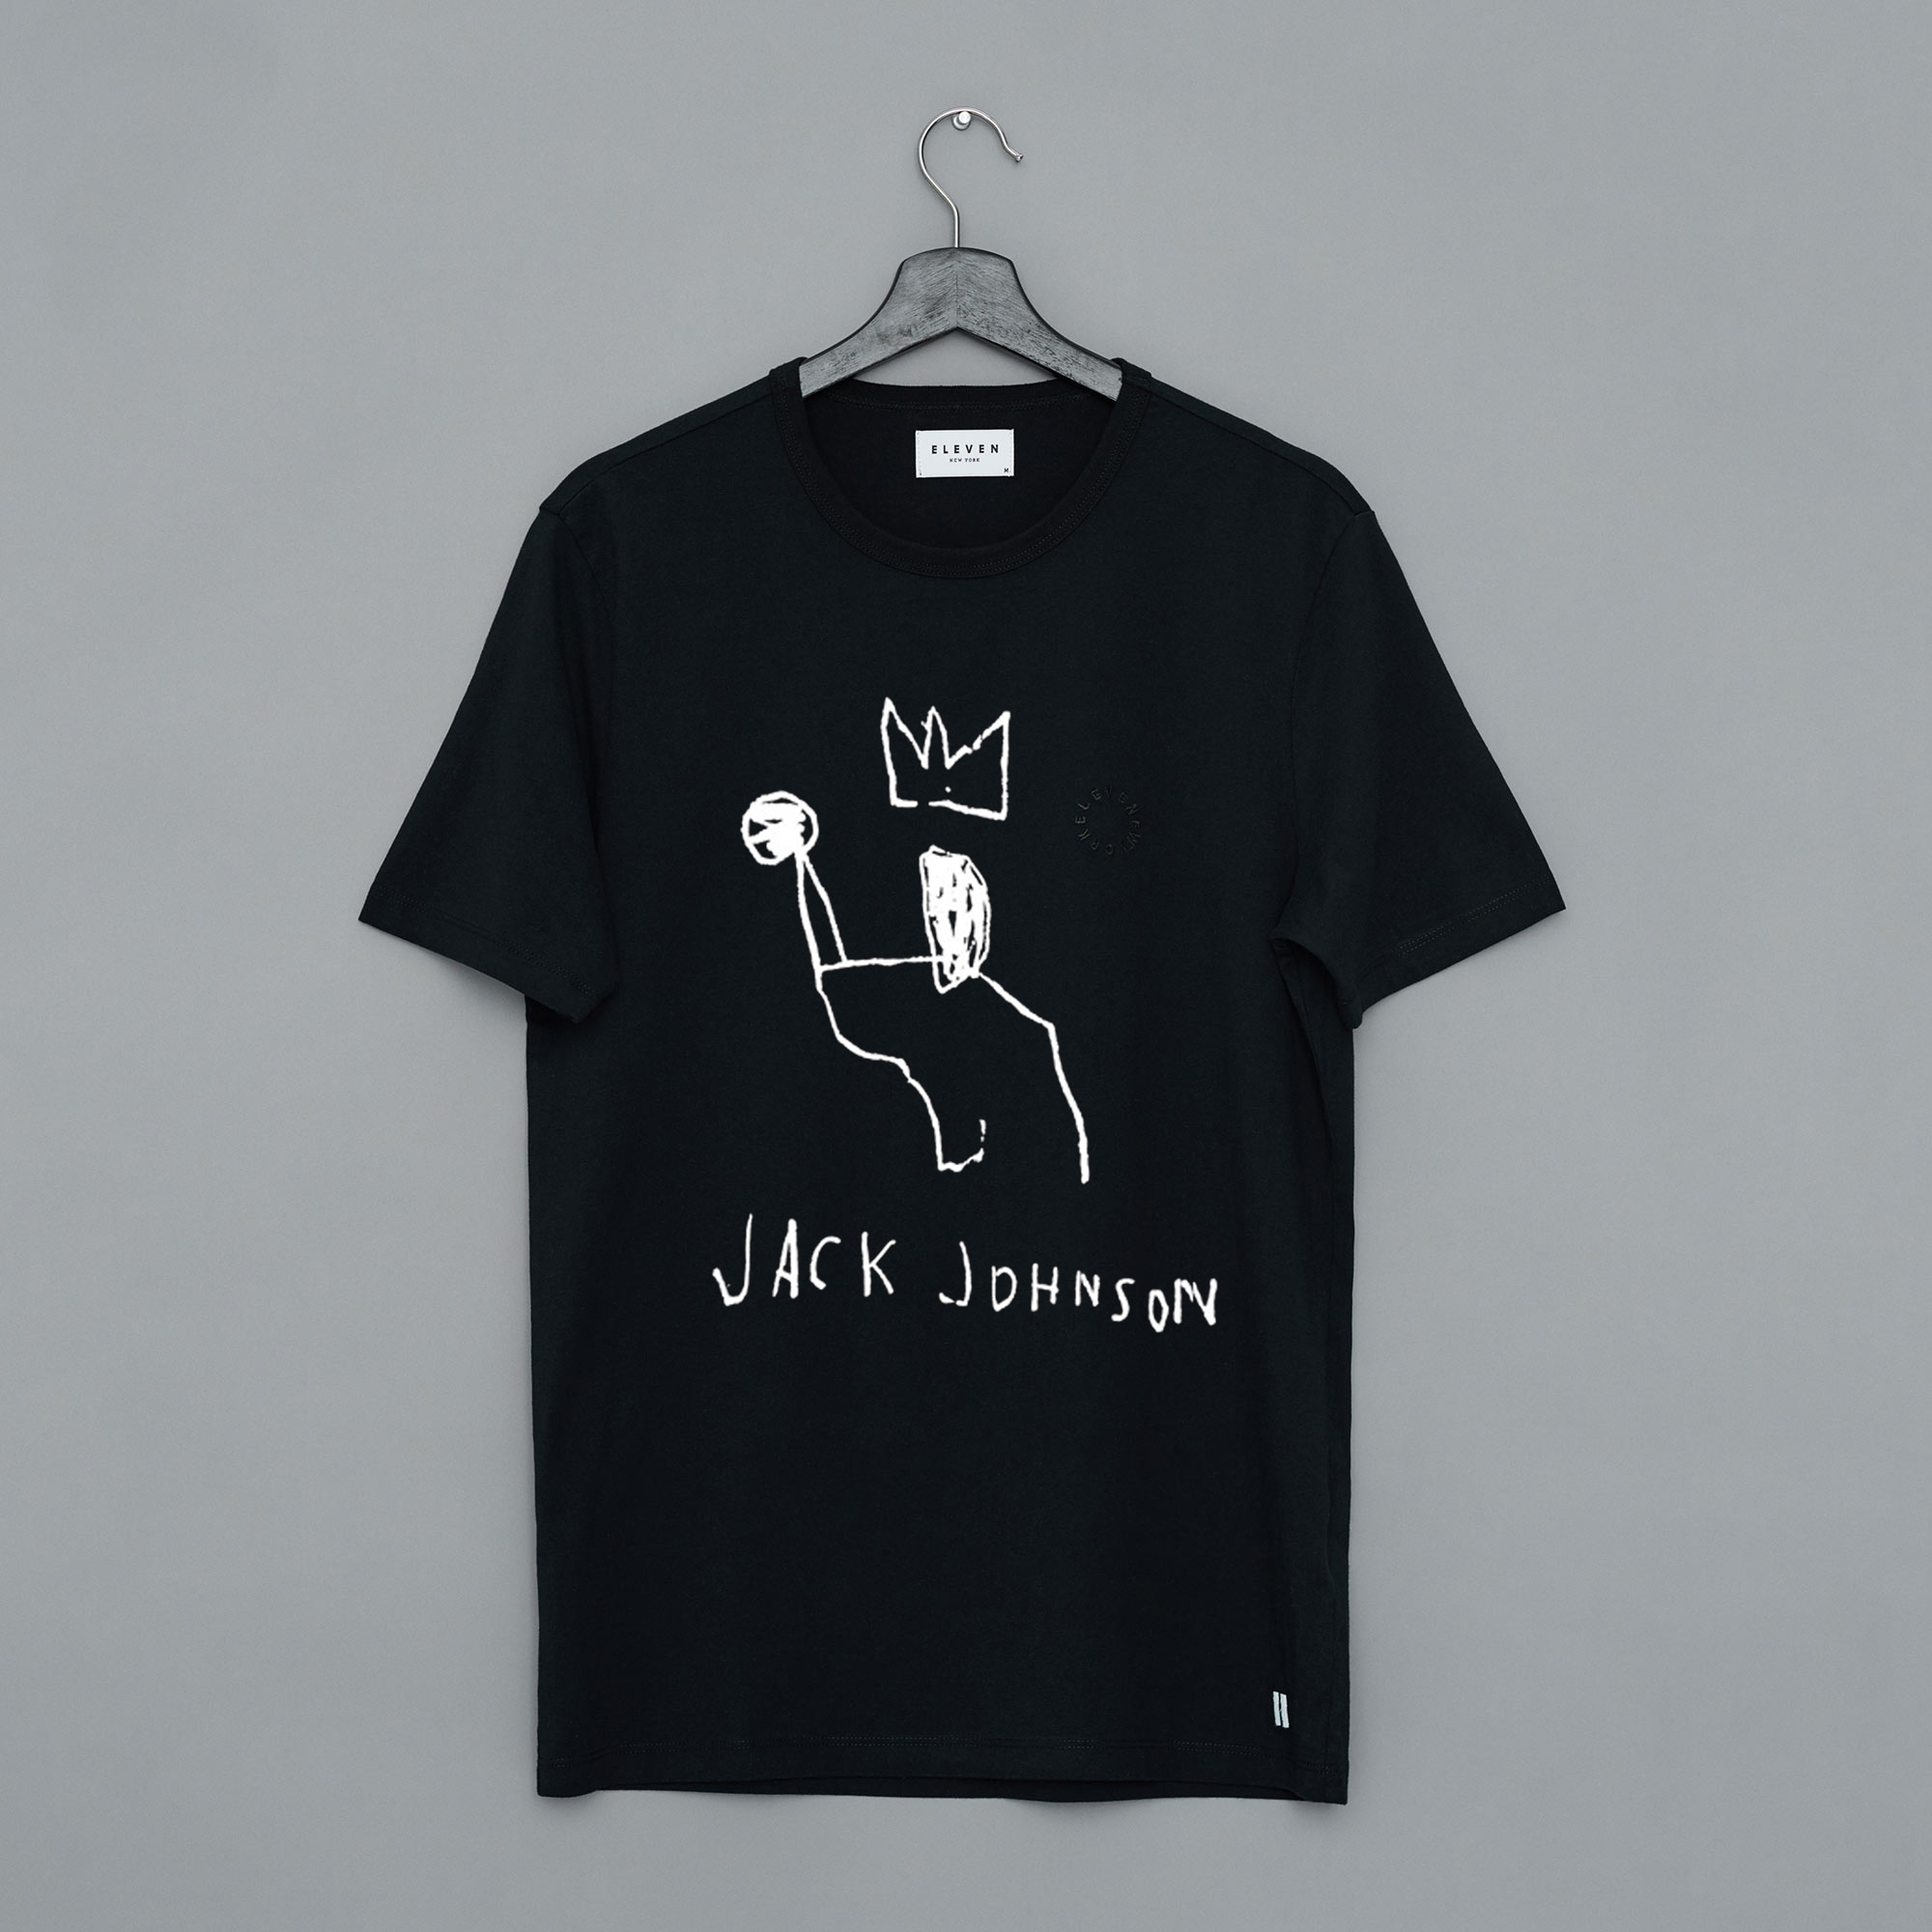 jack johnson tour t shirts